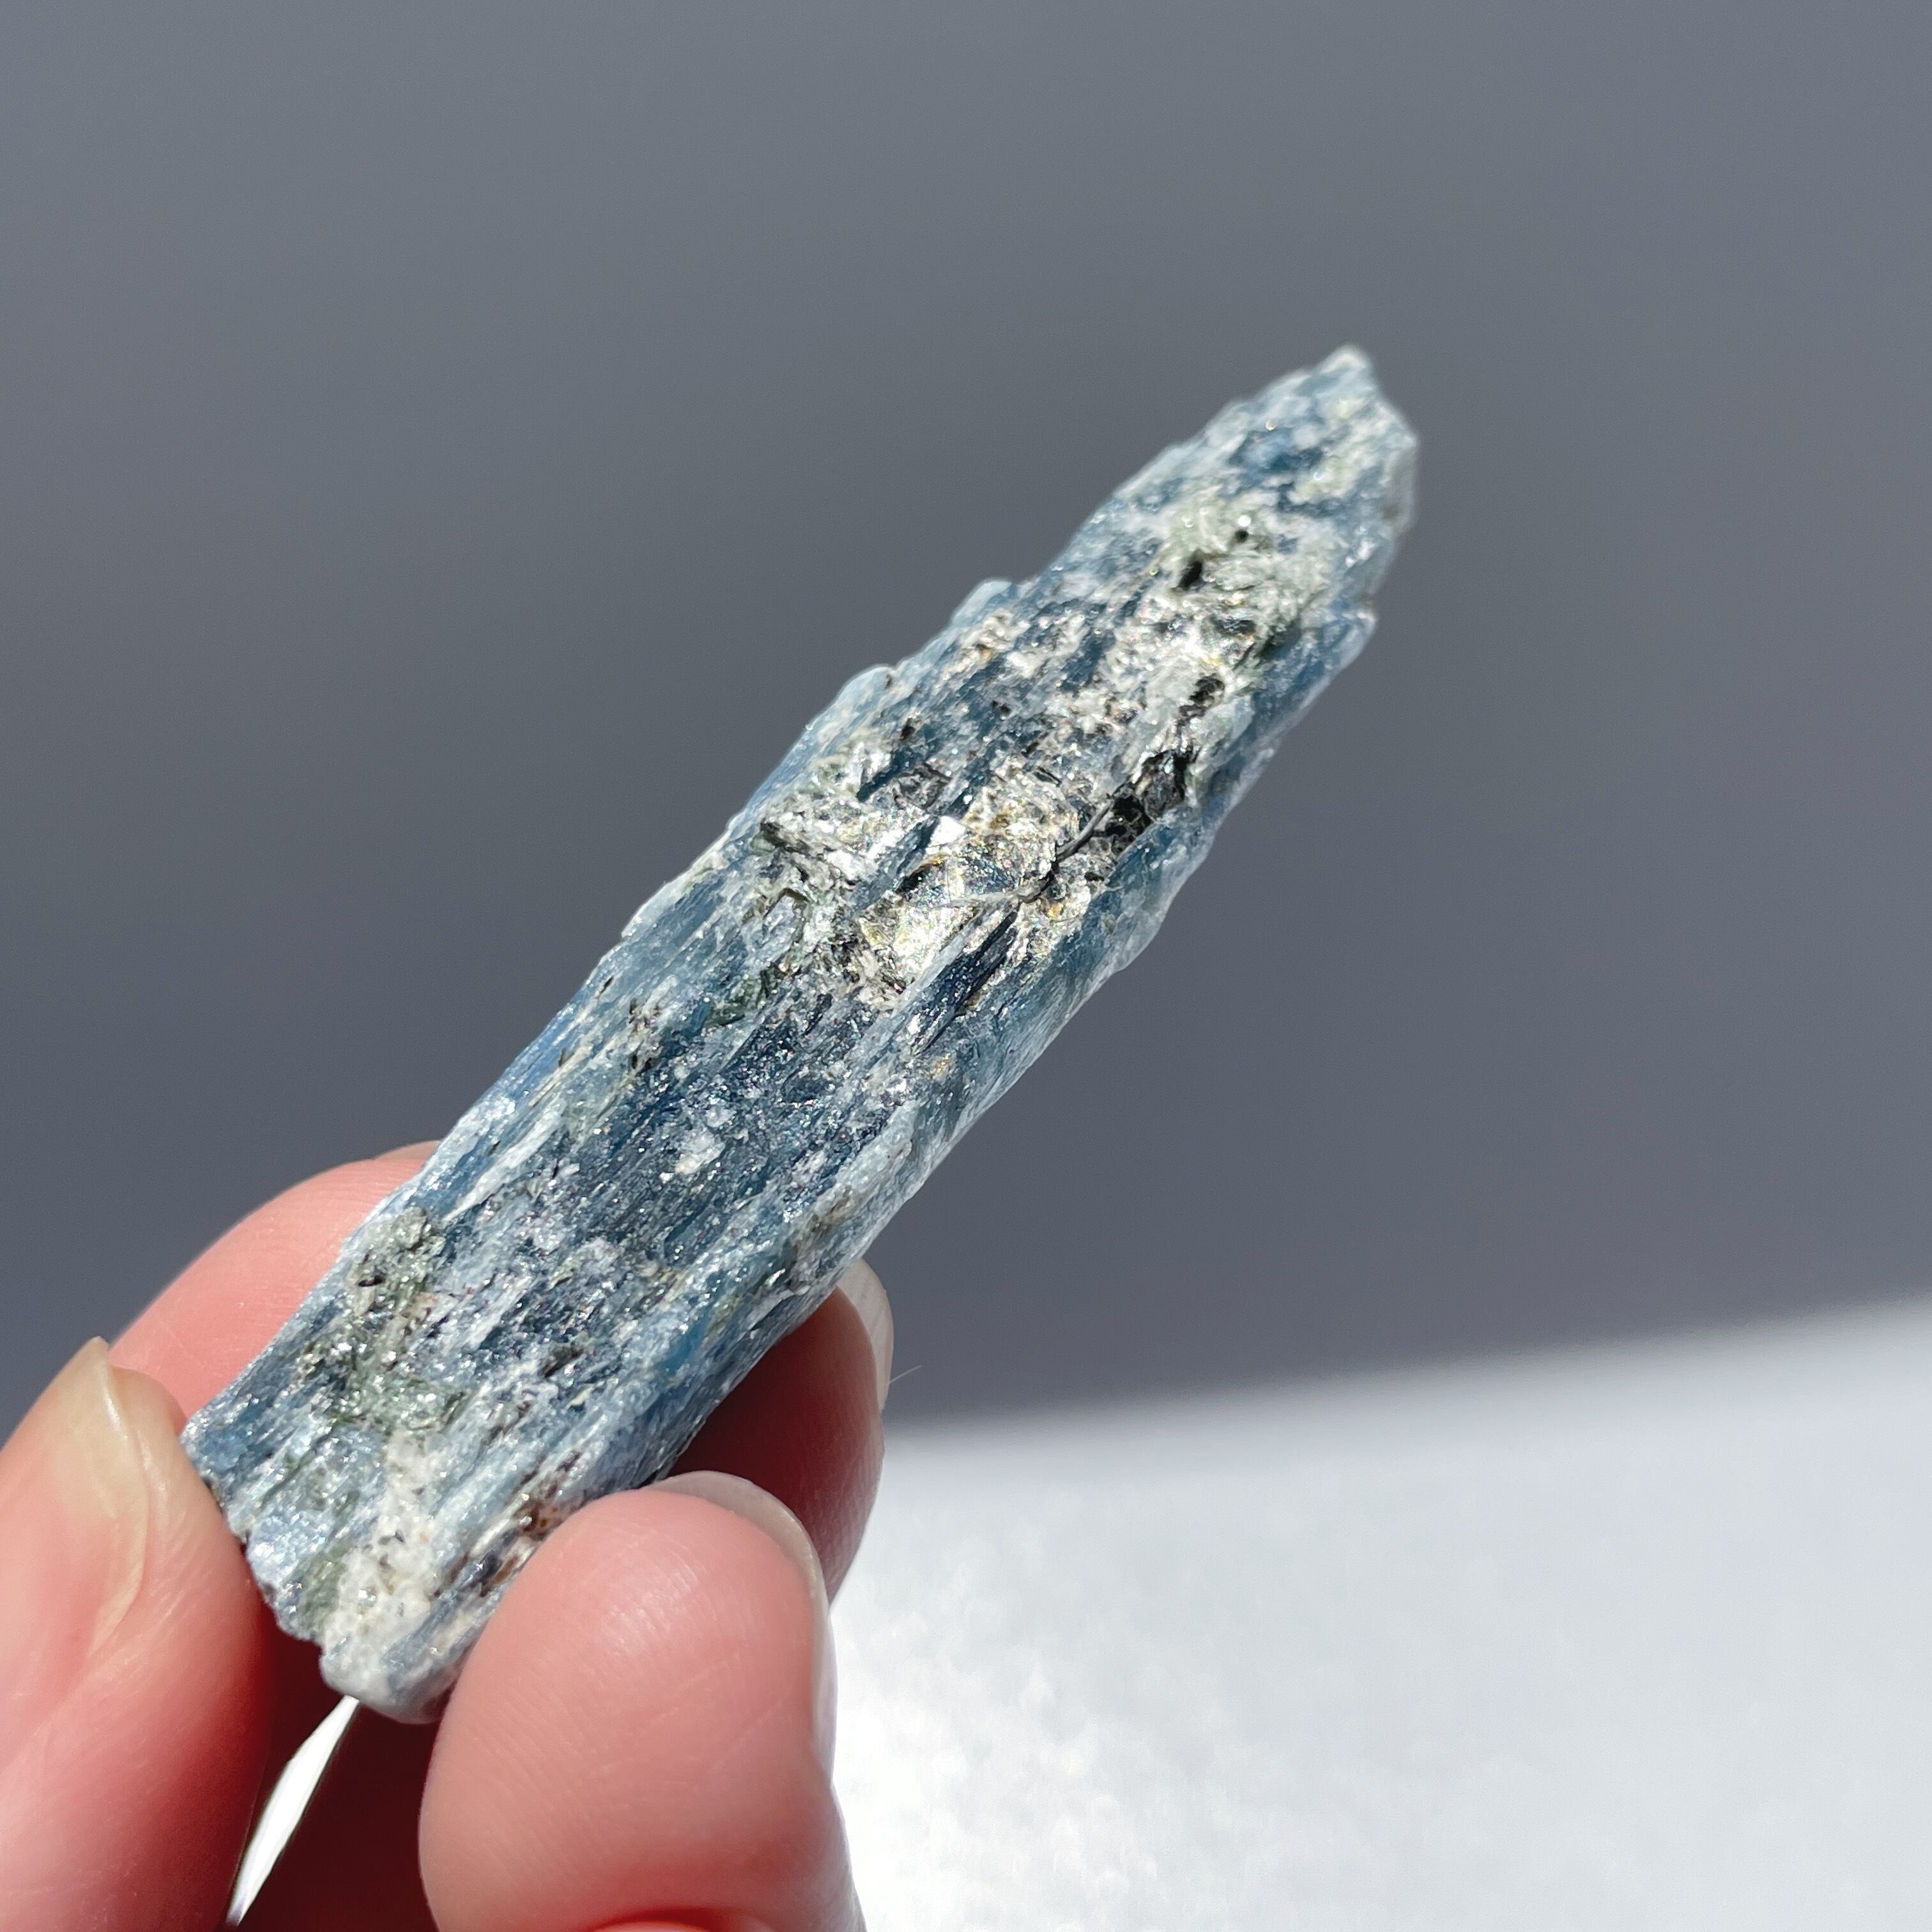 カイヤナイト 原石01◇ Kyanite ◇天然石・鉱物・パワーストーン 